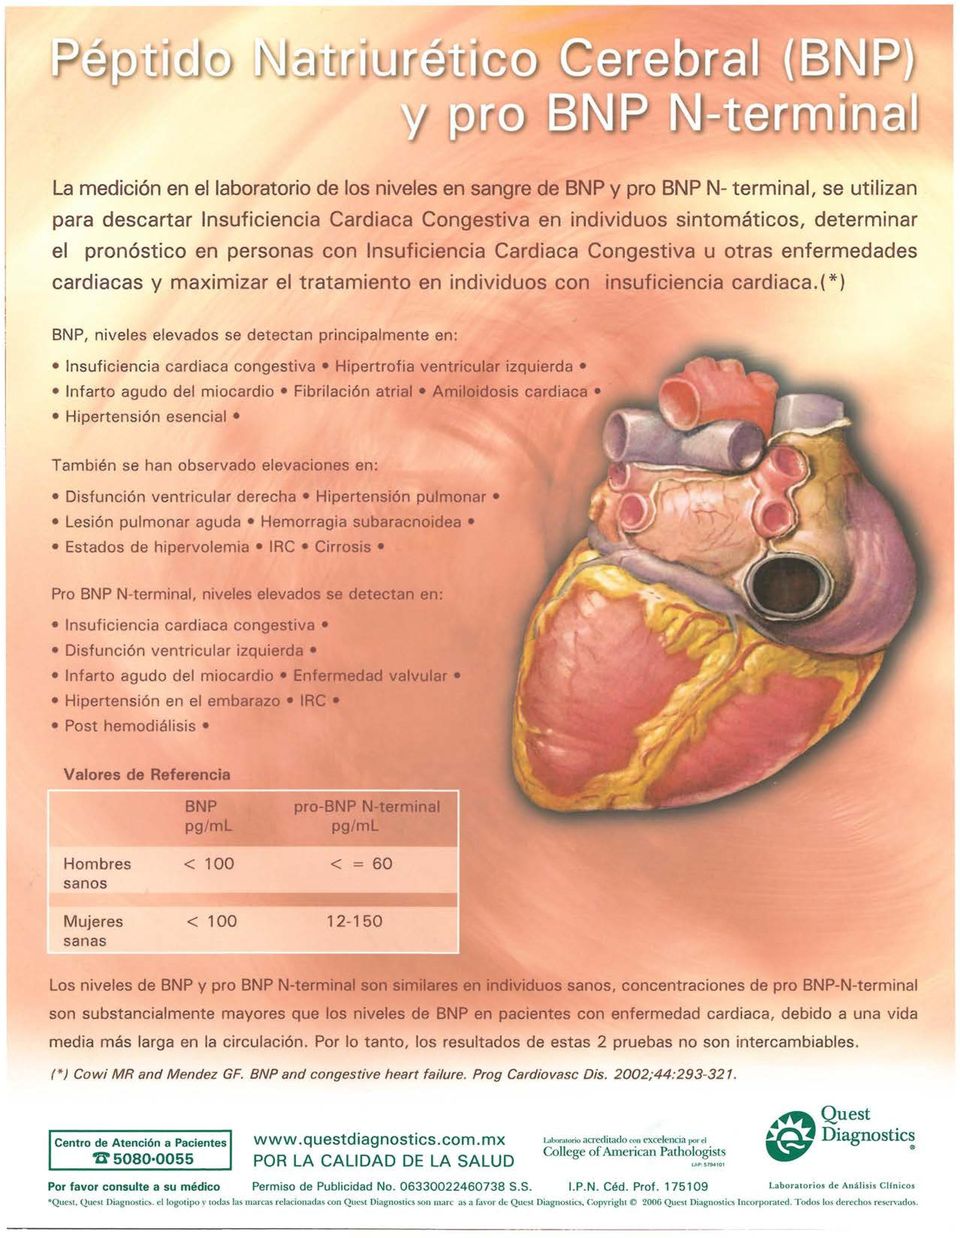 ( * ) BN P, niveles elevados se detectan principalmente en: Insuficiencia cardiaca congestiva Hipertrofia ventricular izquierda Infarto agudo del miocardio Fibrilación atrial Amiloidosis cardiaca